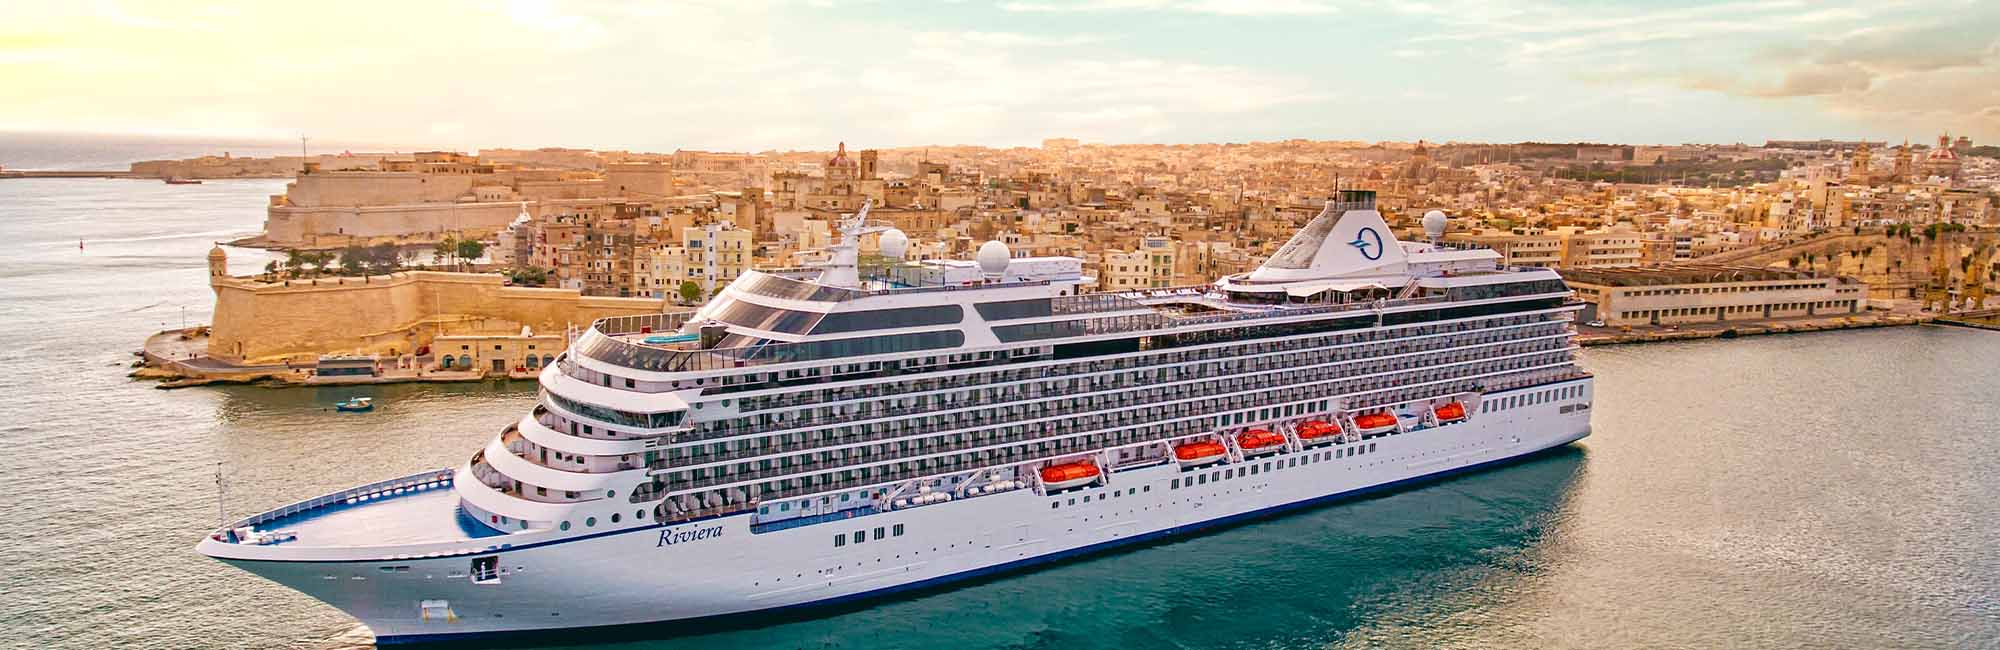 oceania cruise fares